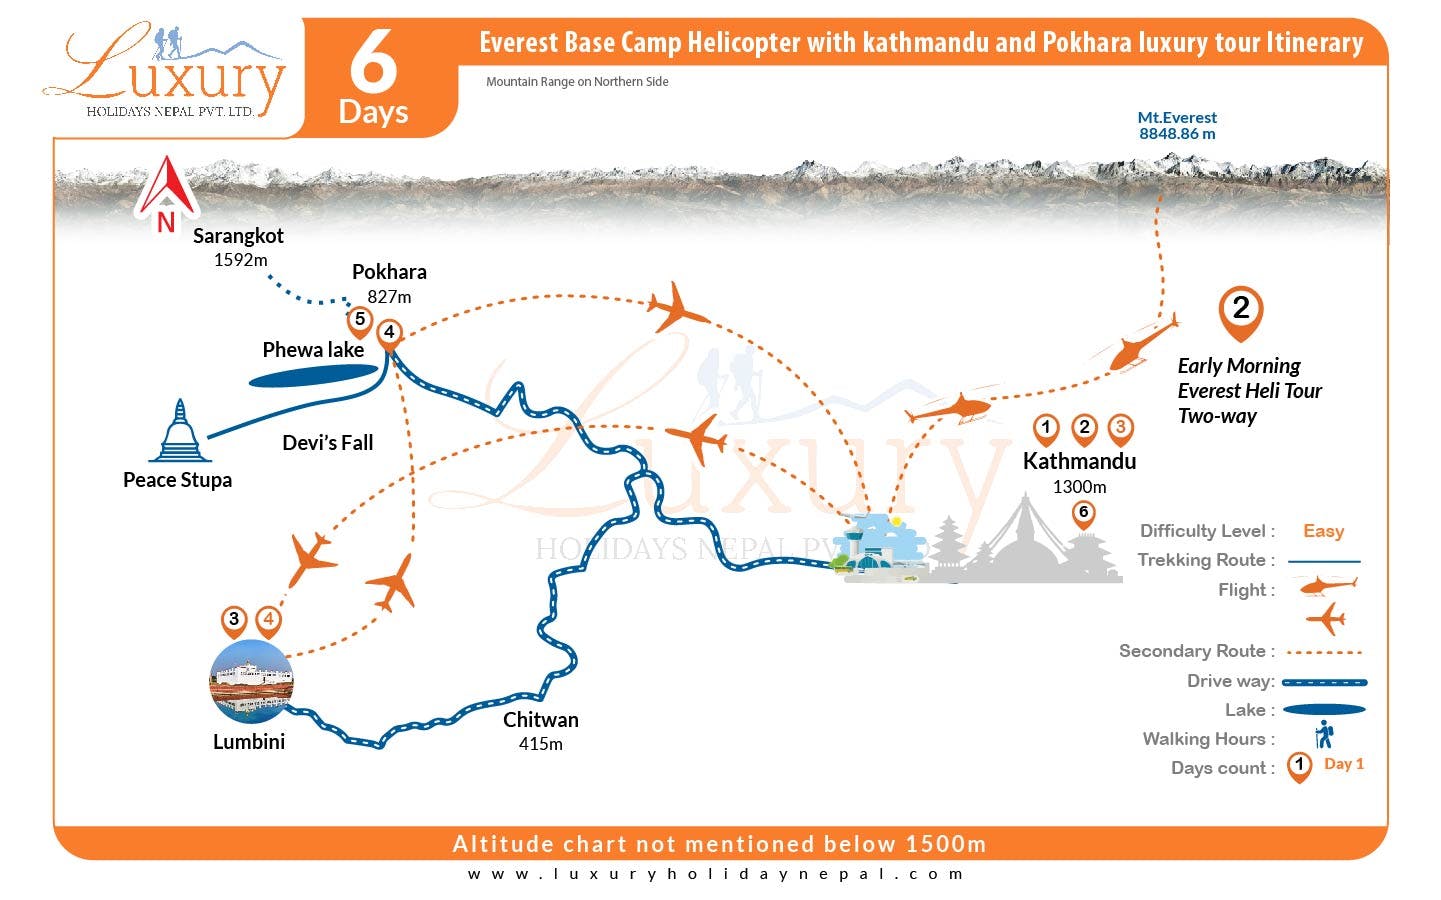 Everest Base Camp Helicopter with Kathmandu and Pokhara Luxury TourMap